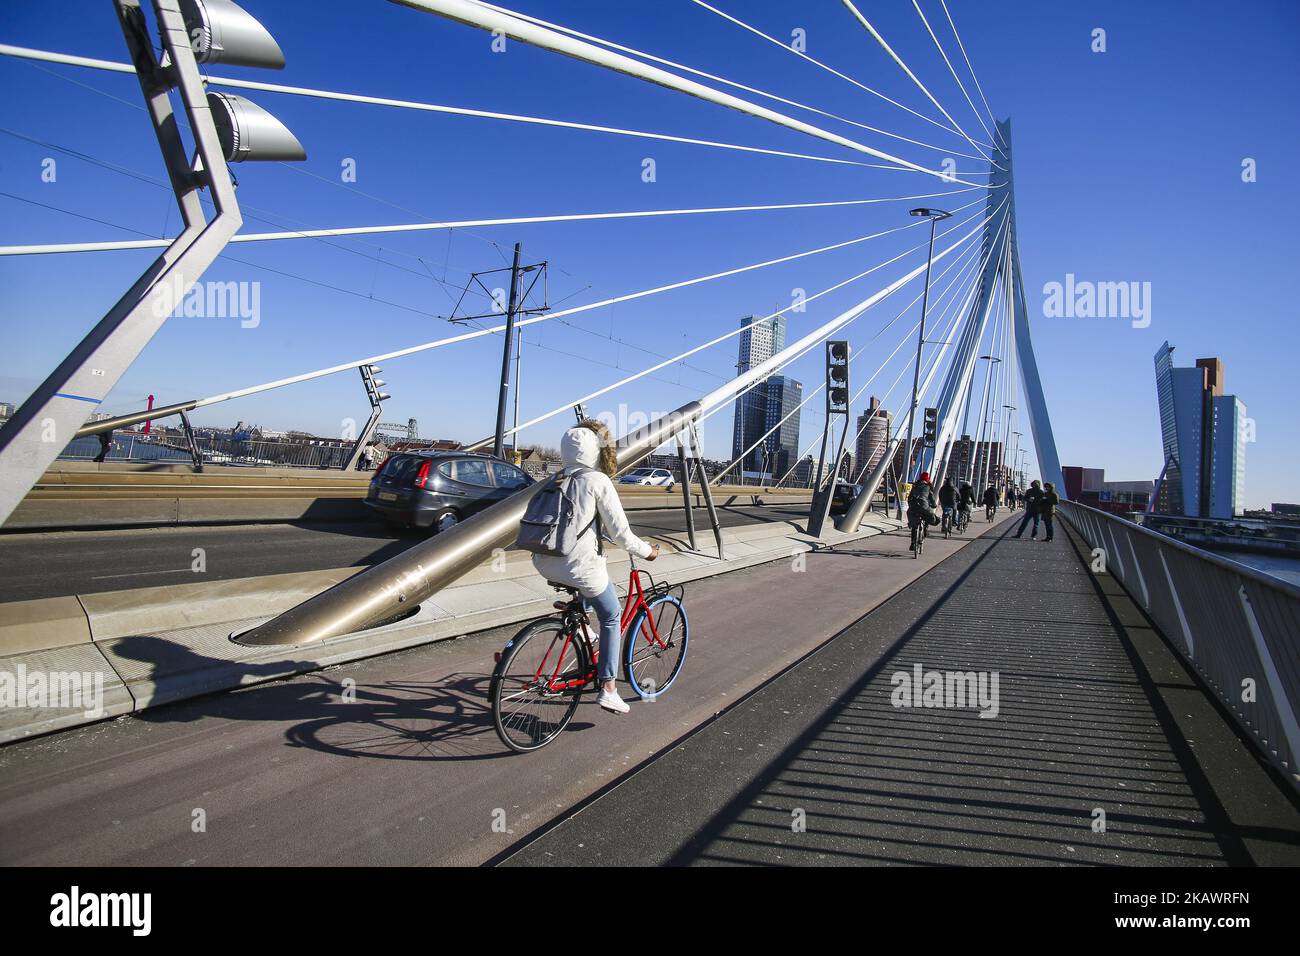 Erasmusbrug oder Erasmus-Brücke in Rotterdam, Niederlande am 25. Februar 2018. Die berühmte Kabelbrücke ist nach Desiderius Erasmus aus Rotterdam benannt. Die Brücke hat einen Spitznamen, genannt 'der Schwan'. Es wurde 1996 in Höhe von 165 Millionen Euro gebaut. Die Gesamtlänge der Brücke beträgt 802 Meter und ist 139m Meter hoch. Es ist die Bascule Brücke ist die größte und schwerste in West-Euroope. Heute ist ein Meilenstein für Rotterdam, die Niederlande und Europa, wo viele Veranstaltungen stattfinden und in vielen Filmen zu sehen sind. (Foto von Nicolas Economou/NurPhoto) Stockfoto